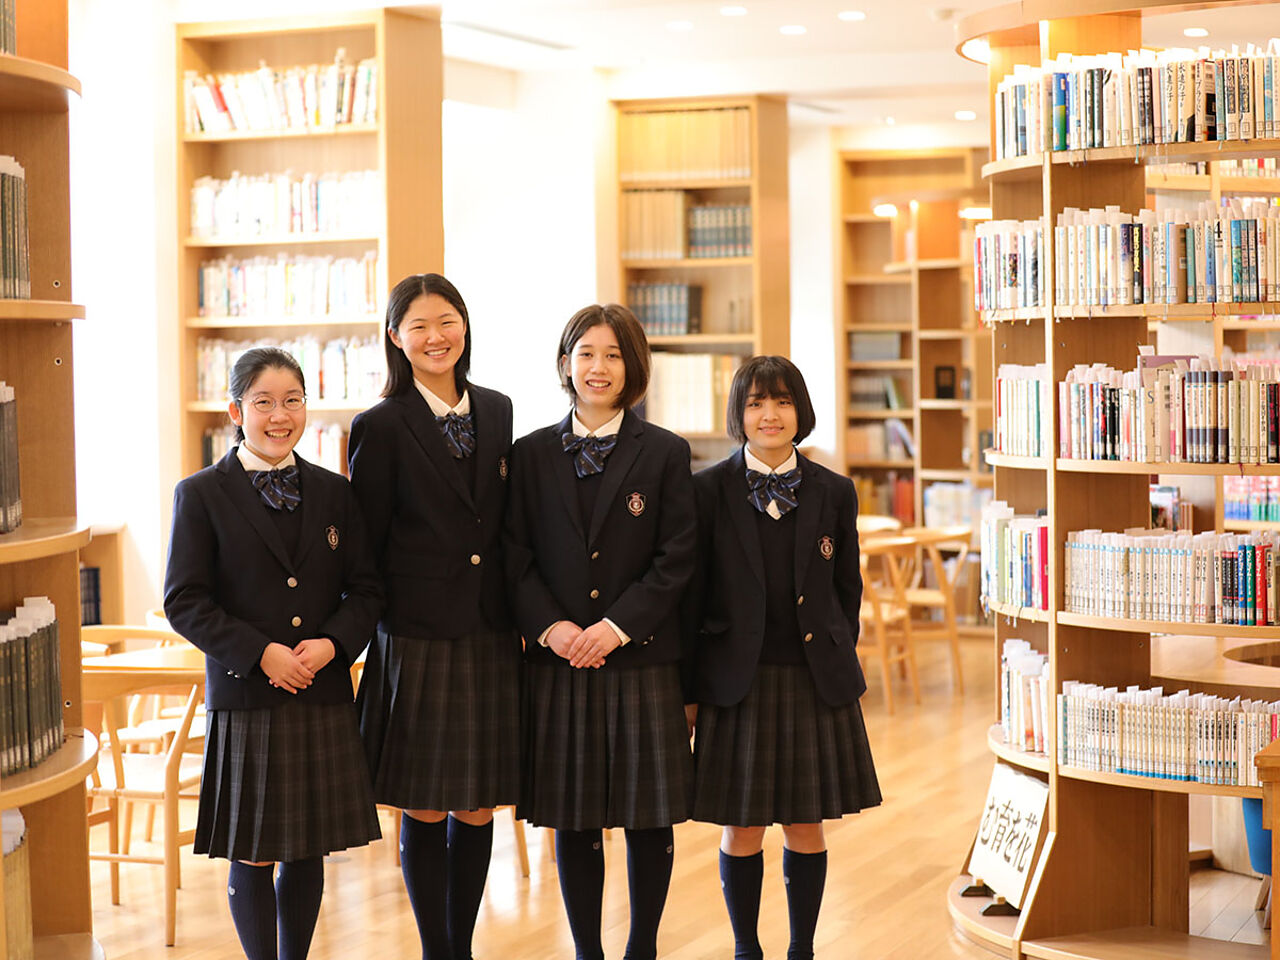 女子生徒が図書館で笑顔で並んでいる画像